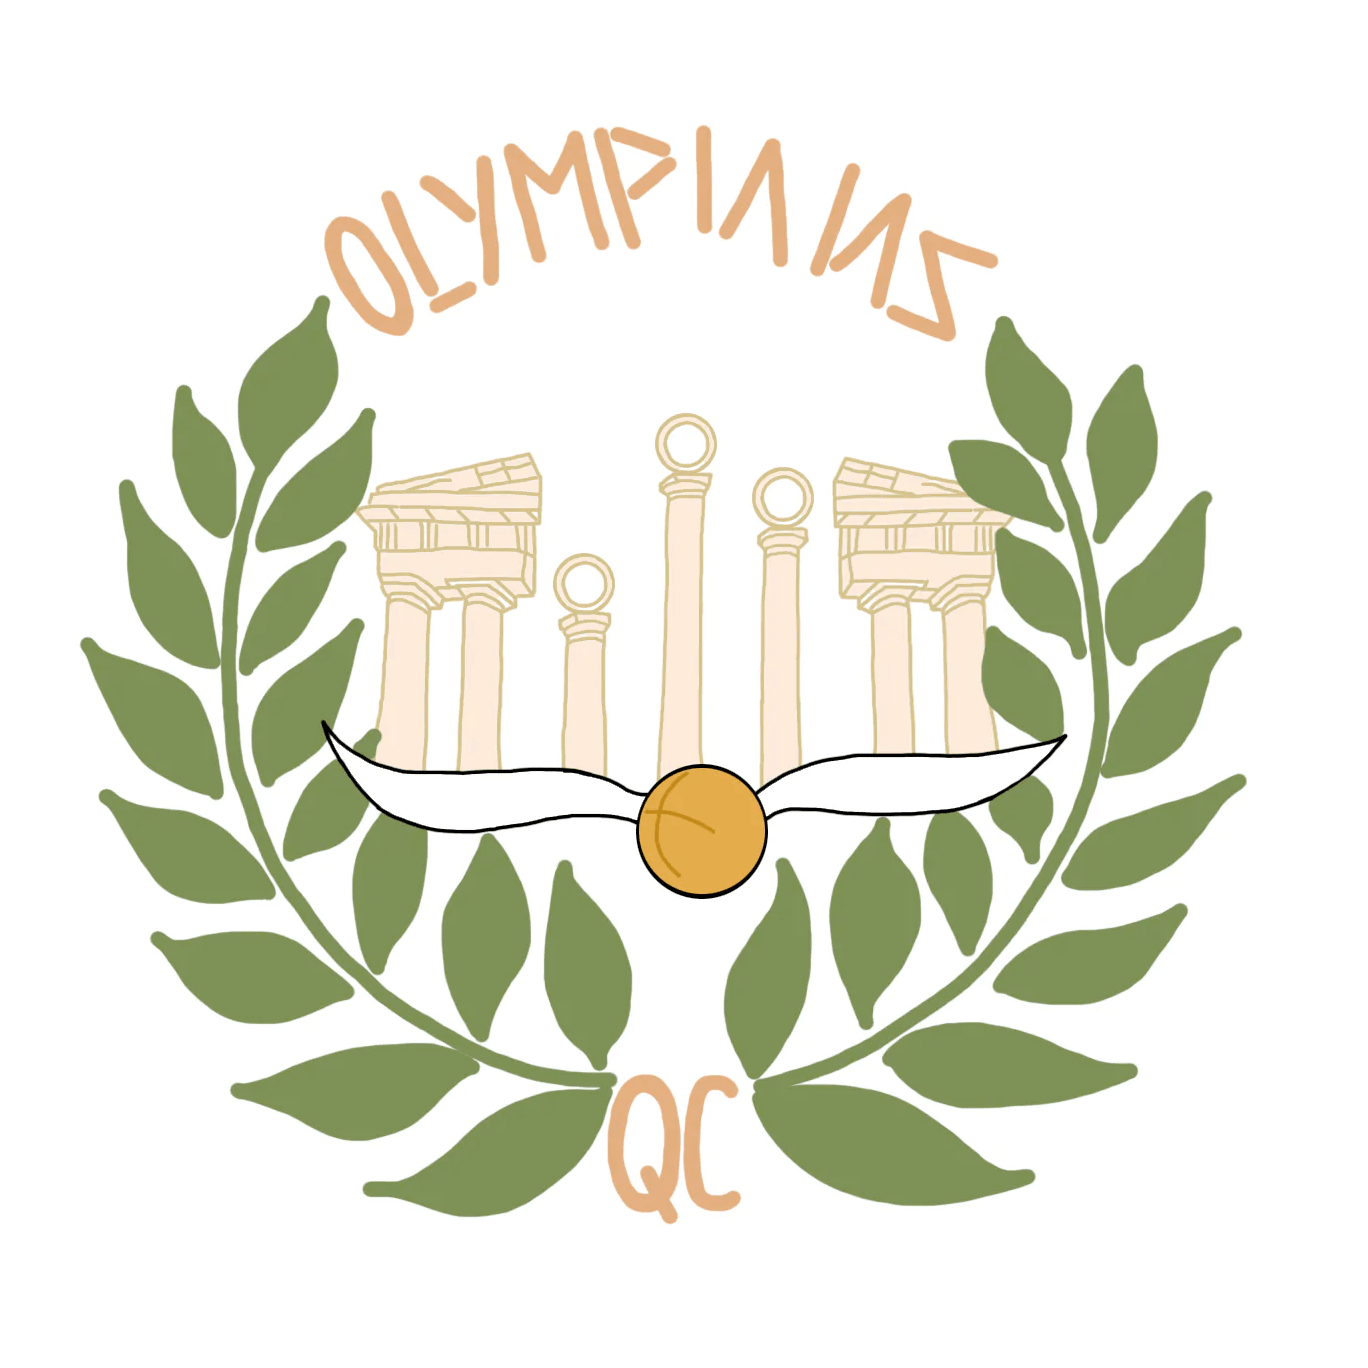 Olympians Quadball Club logo